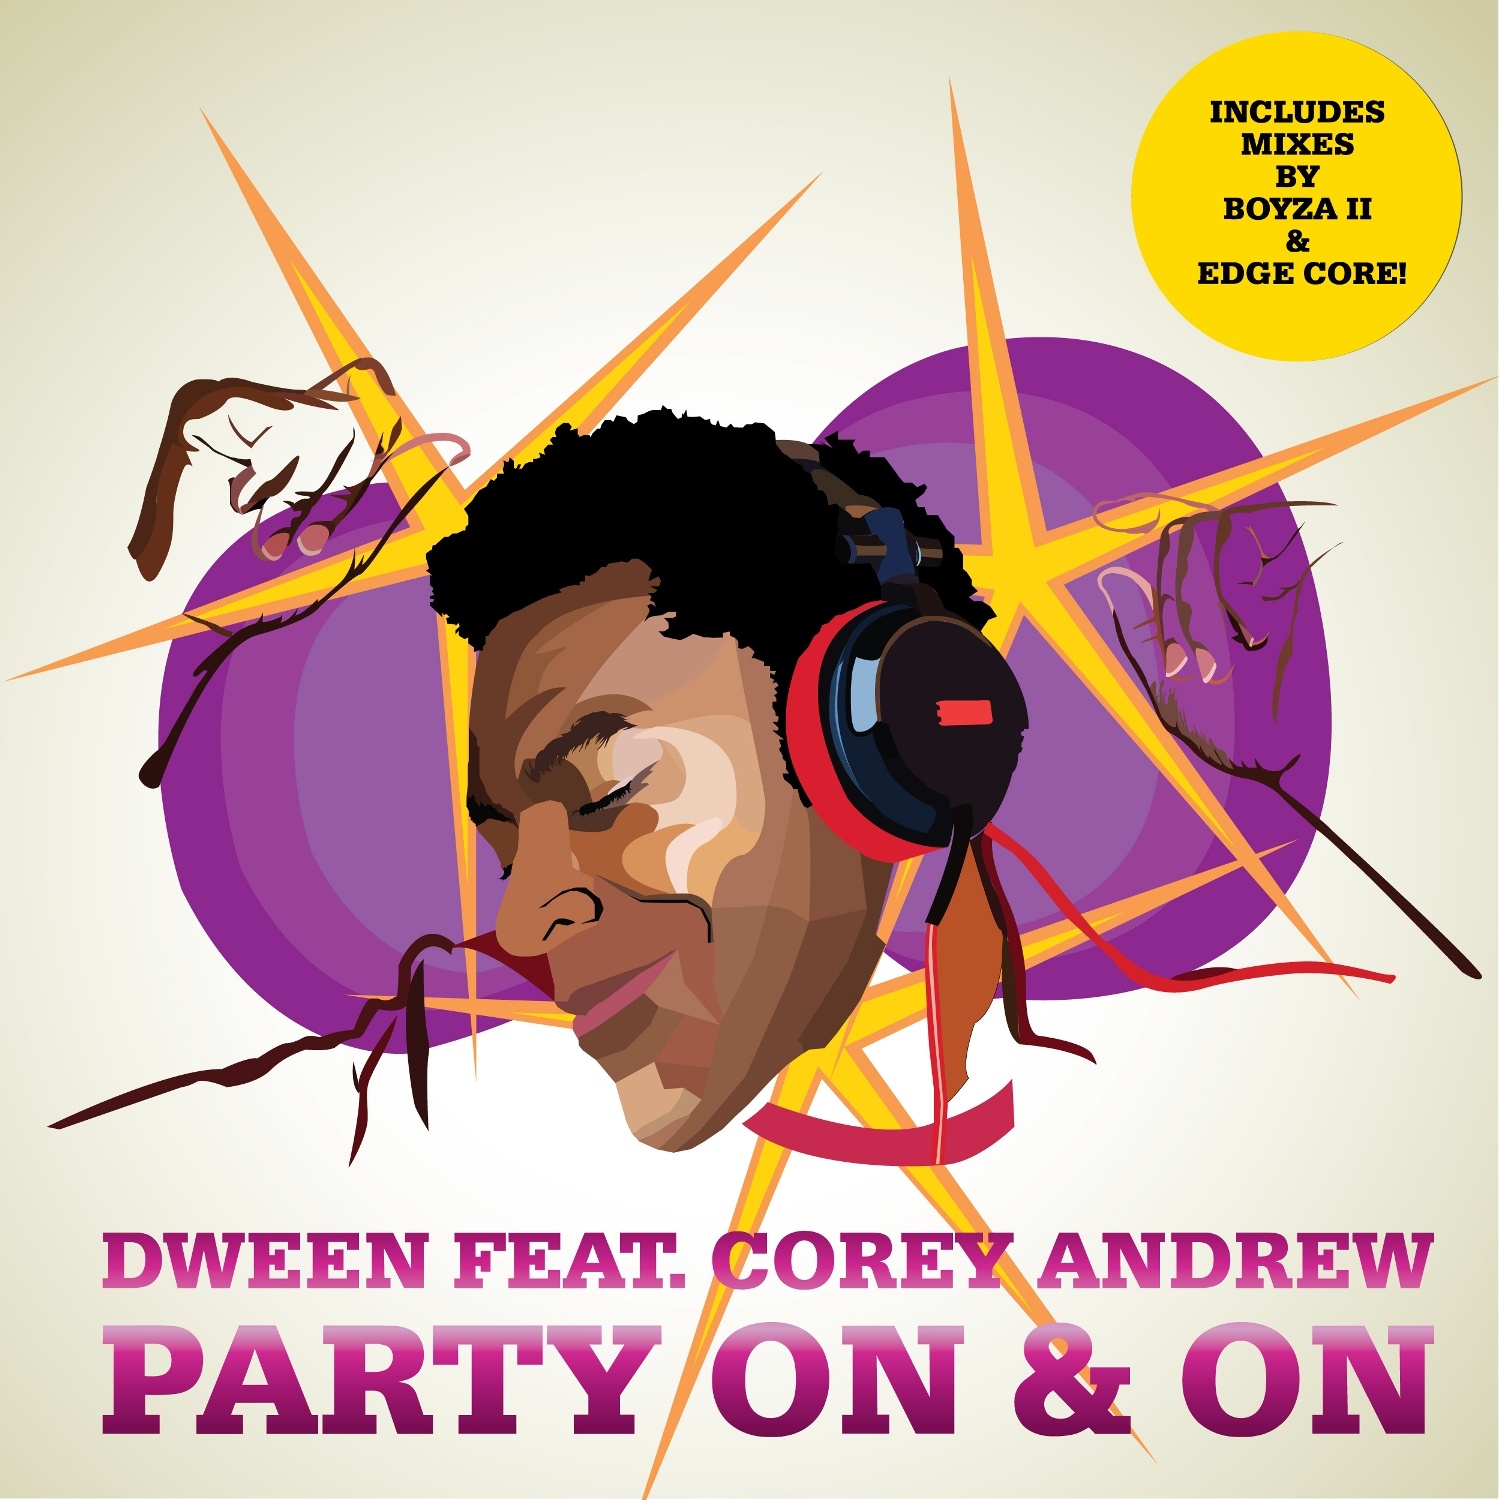 Party On & On (Boyza ii Remix)